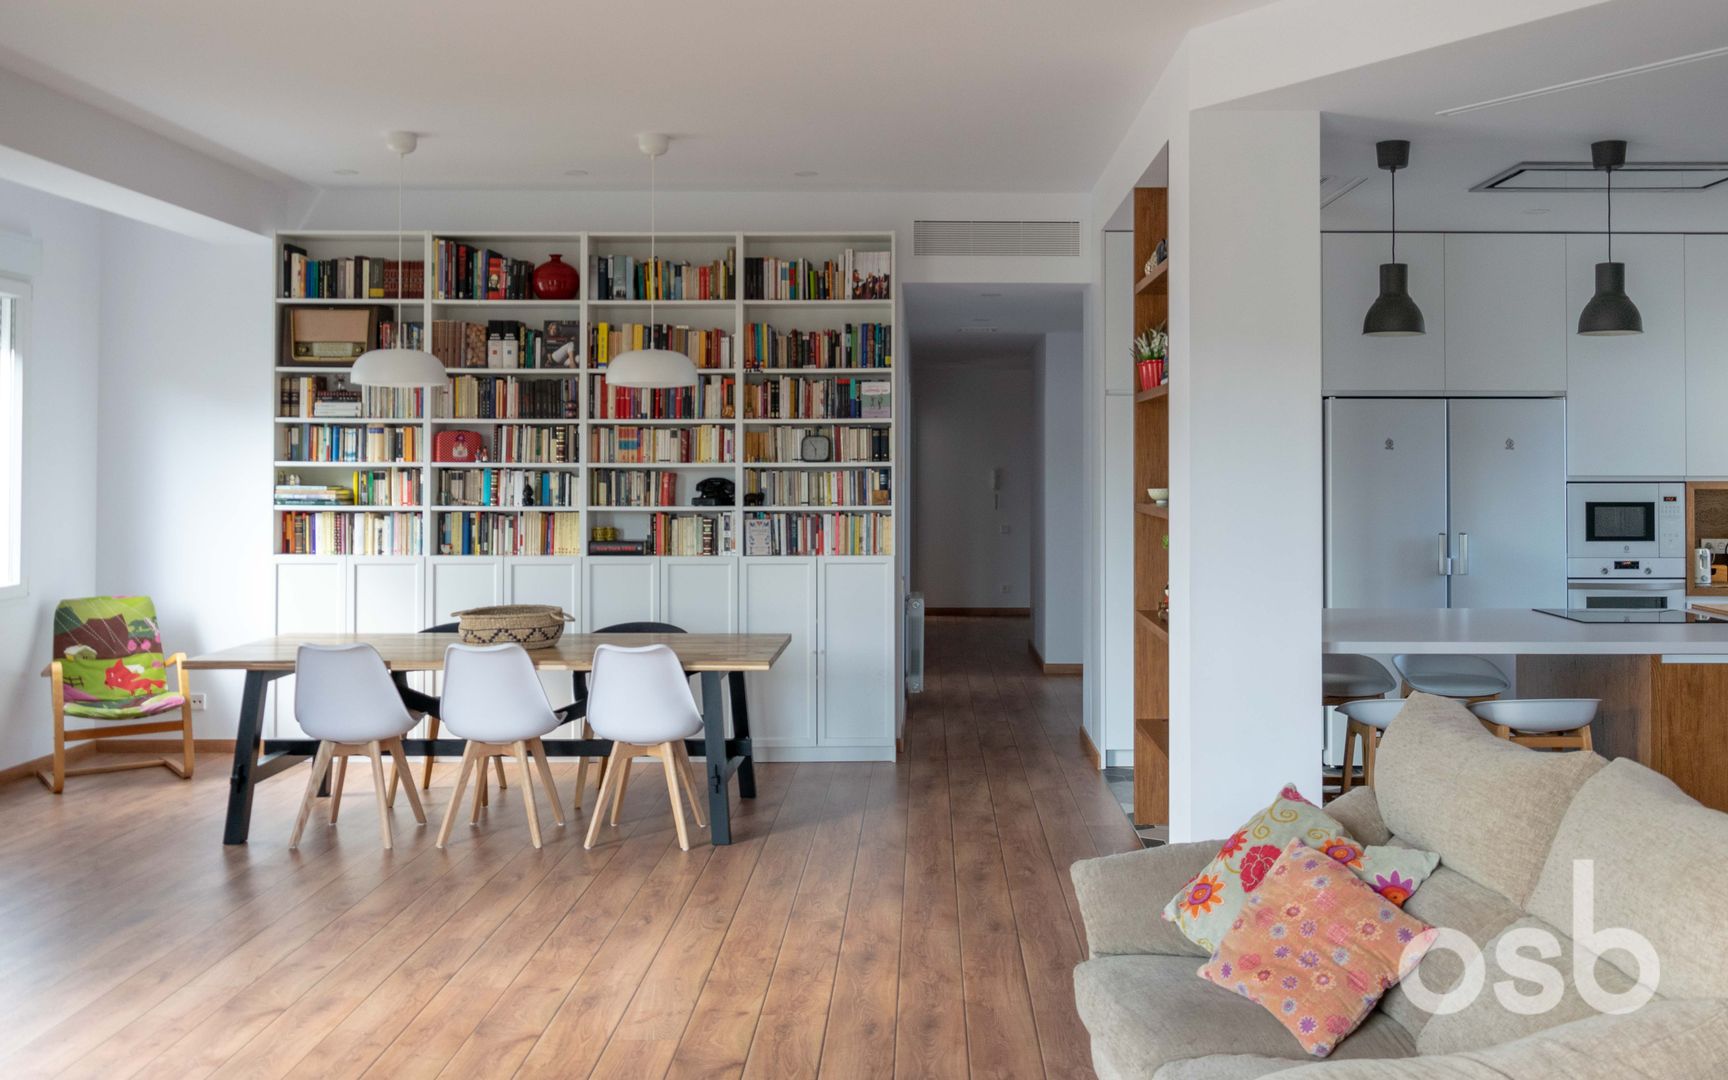 consejos sobre cómo decorar espacios con libros, según interioristas